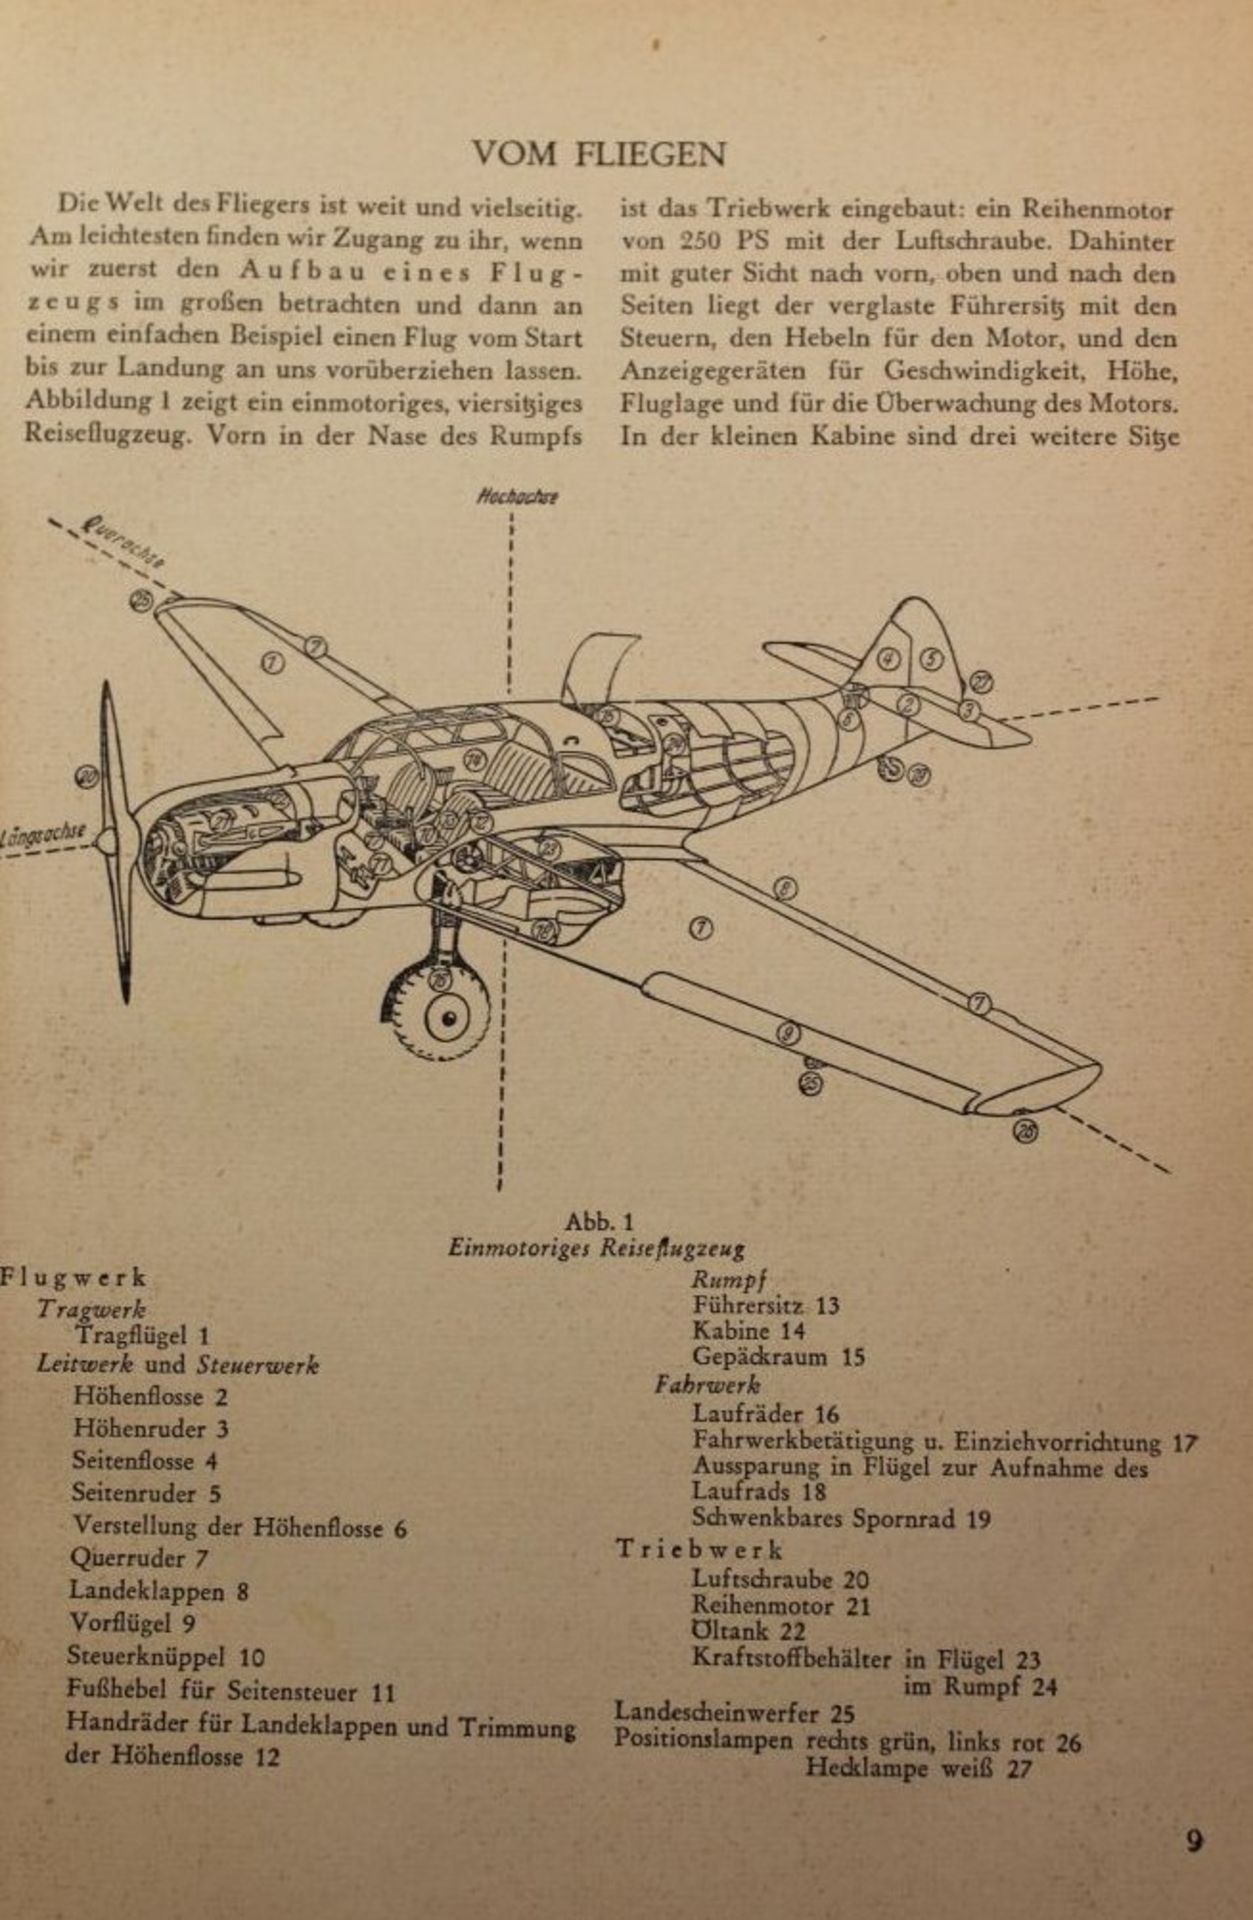 Die Welt des Fliegers- Das Buch der Weltluftfahrt, Robert Knauss, 1. Auflage 1950. - Bild 2 aus 2